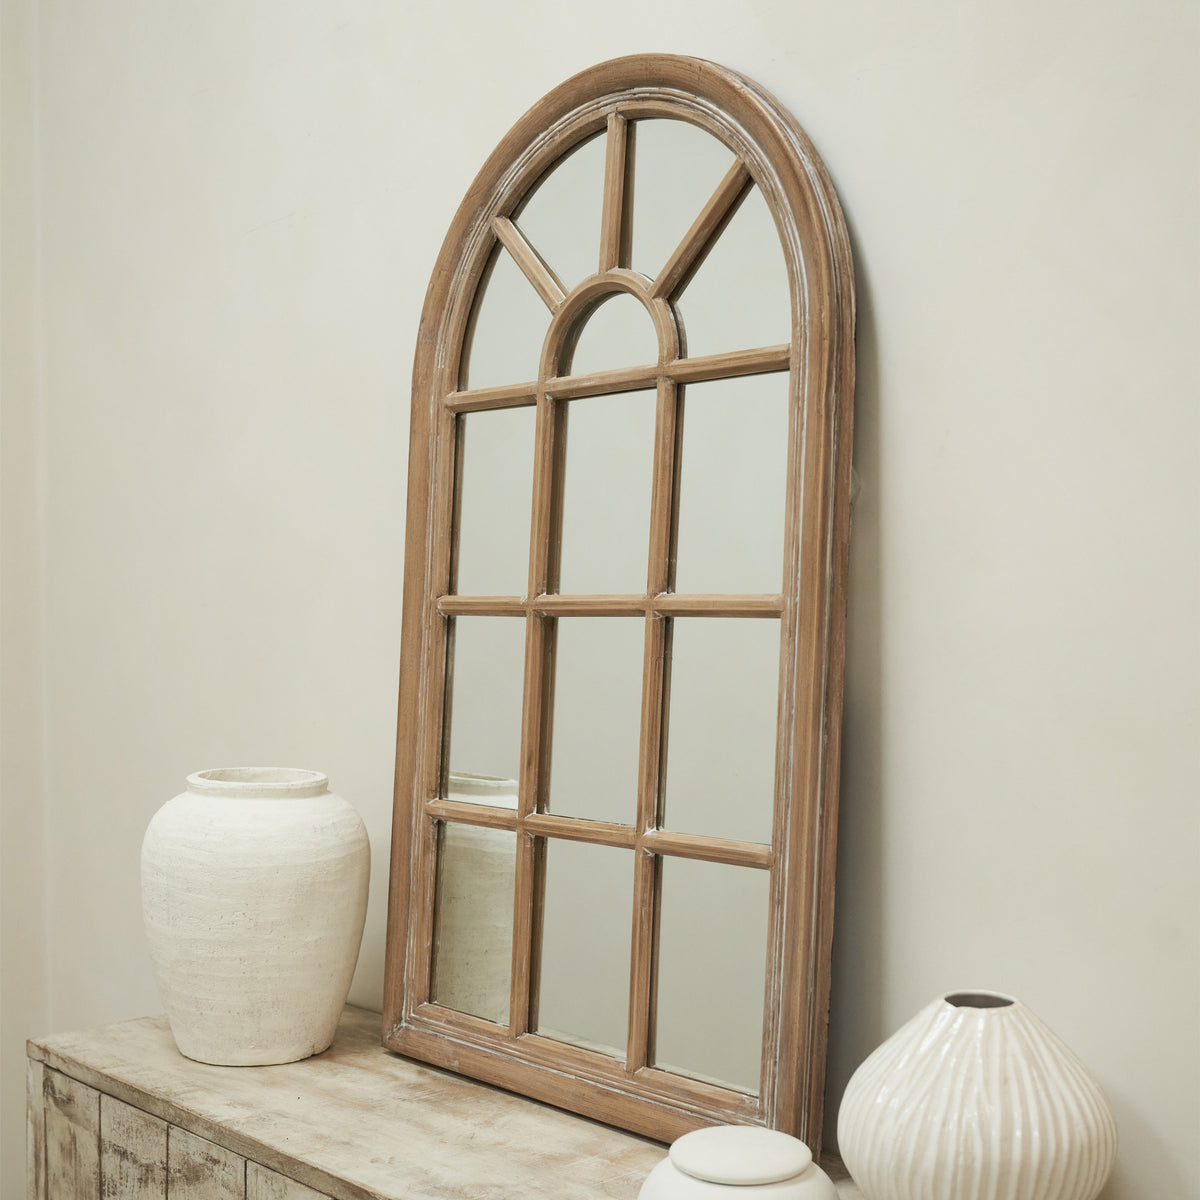 Arabella - Washed Wood Arched Shabby Chic Window Mirror 100cm x 60cm